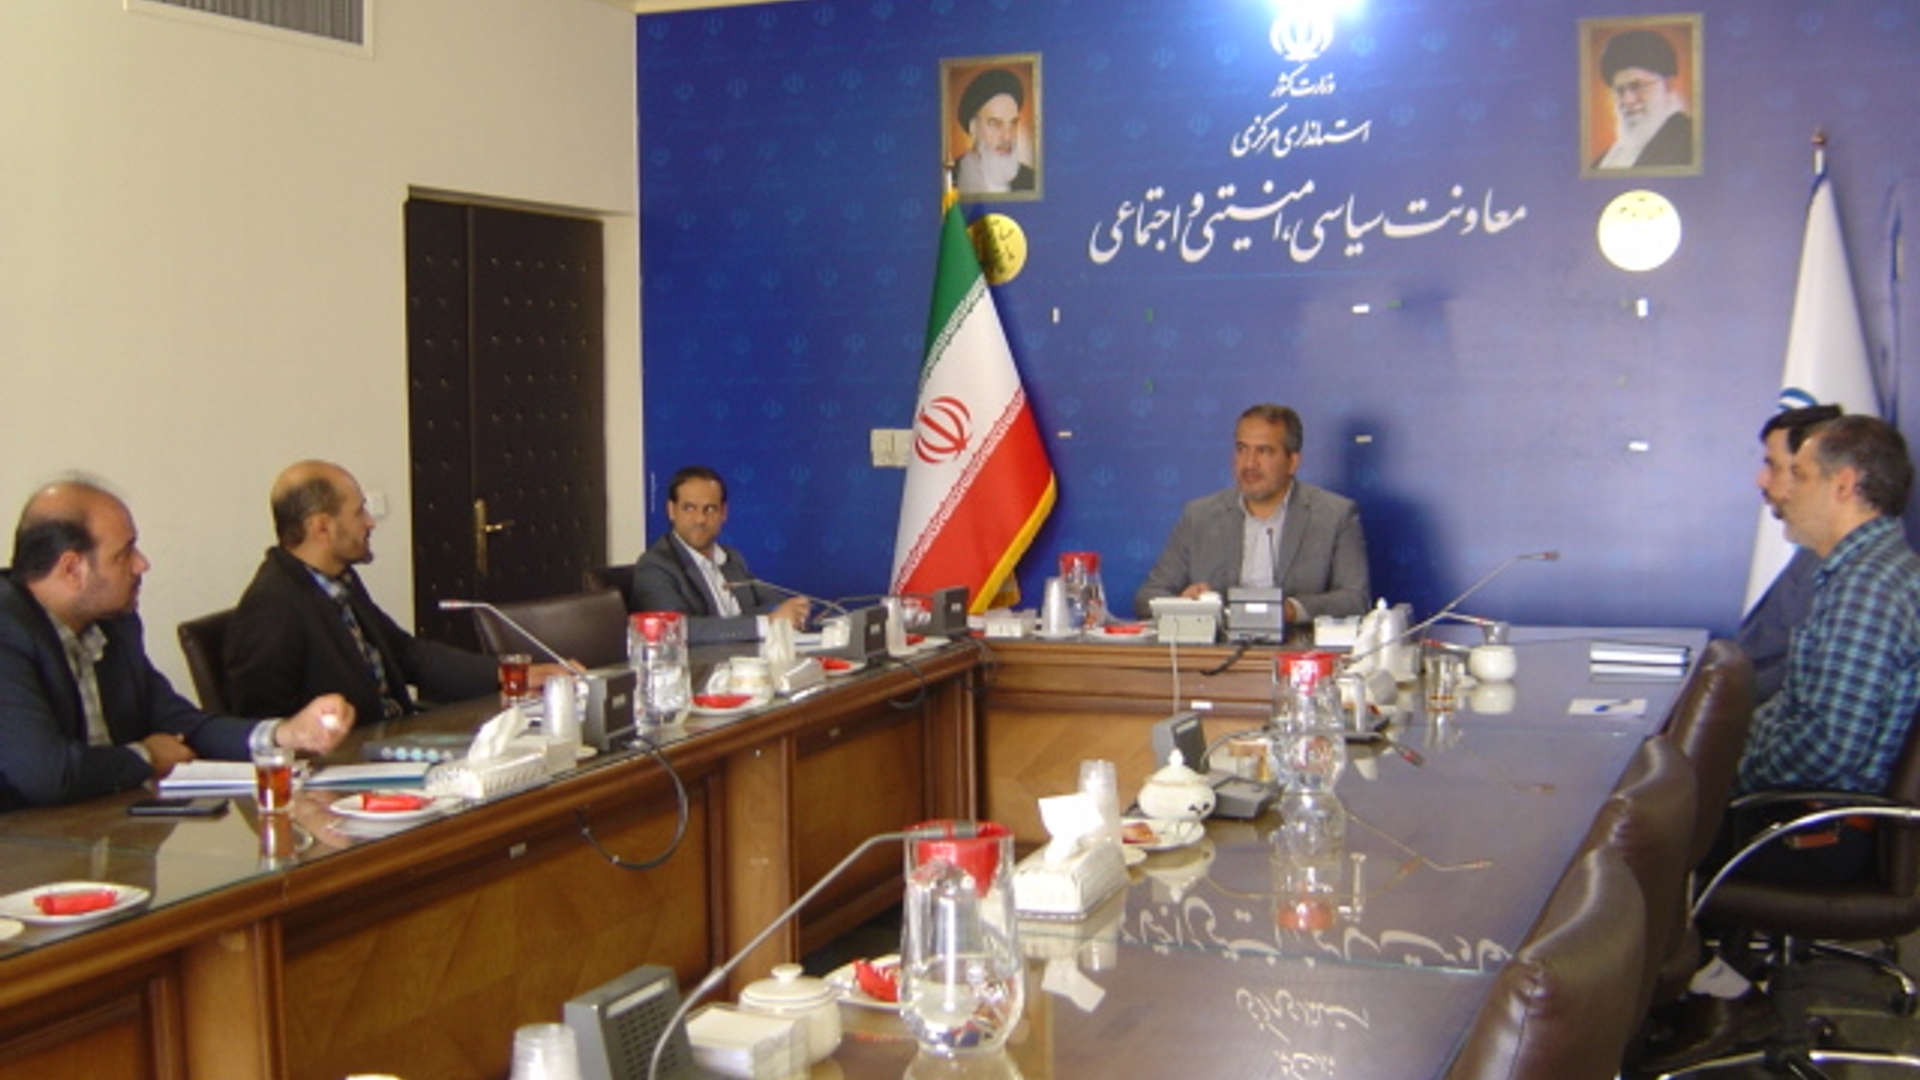 جلسه کمیسیون برآورد اطلاعات استان در ساعت 30-10 صبح روز دوشنبه مورخ 27-6-1402 به ریاست آقای رحیمی تبار برگزار گردید.